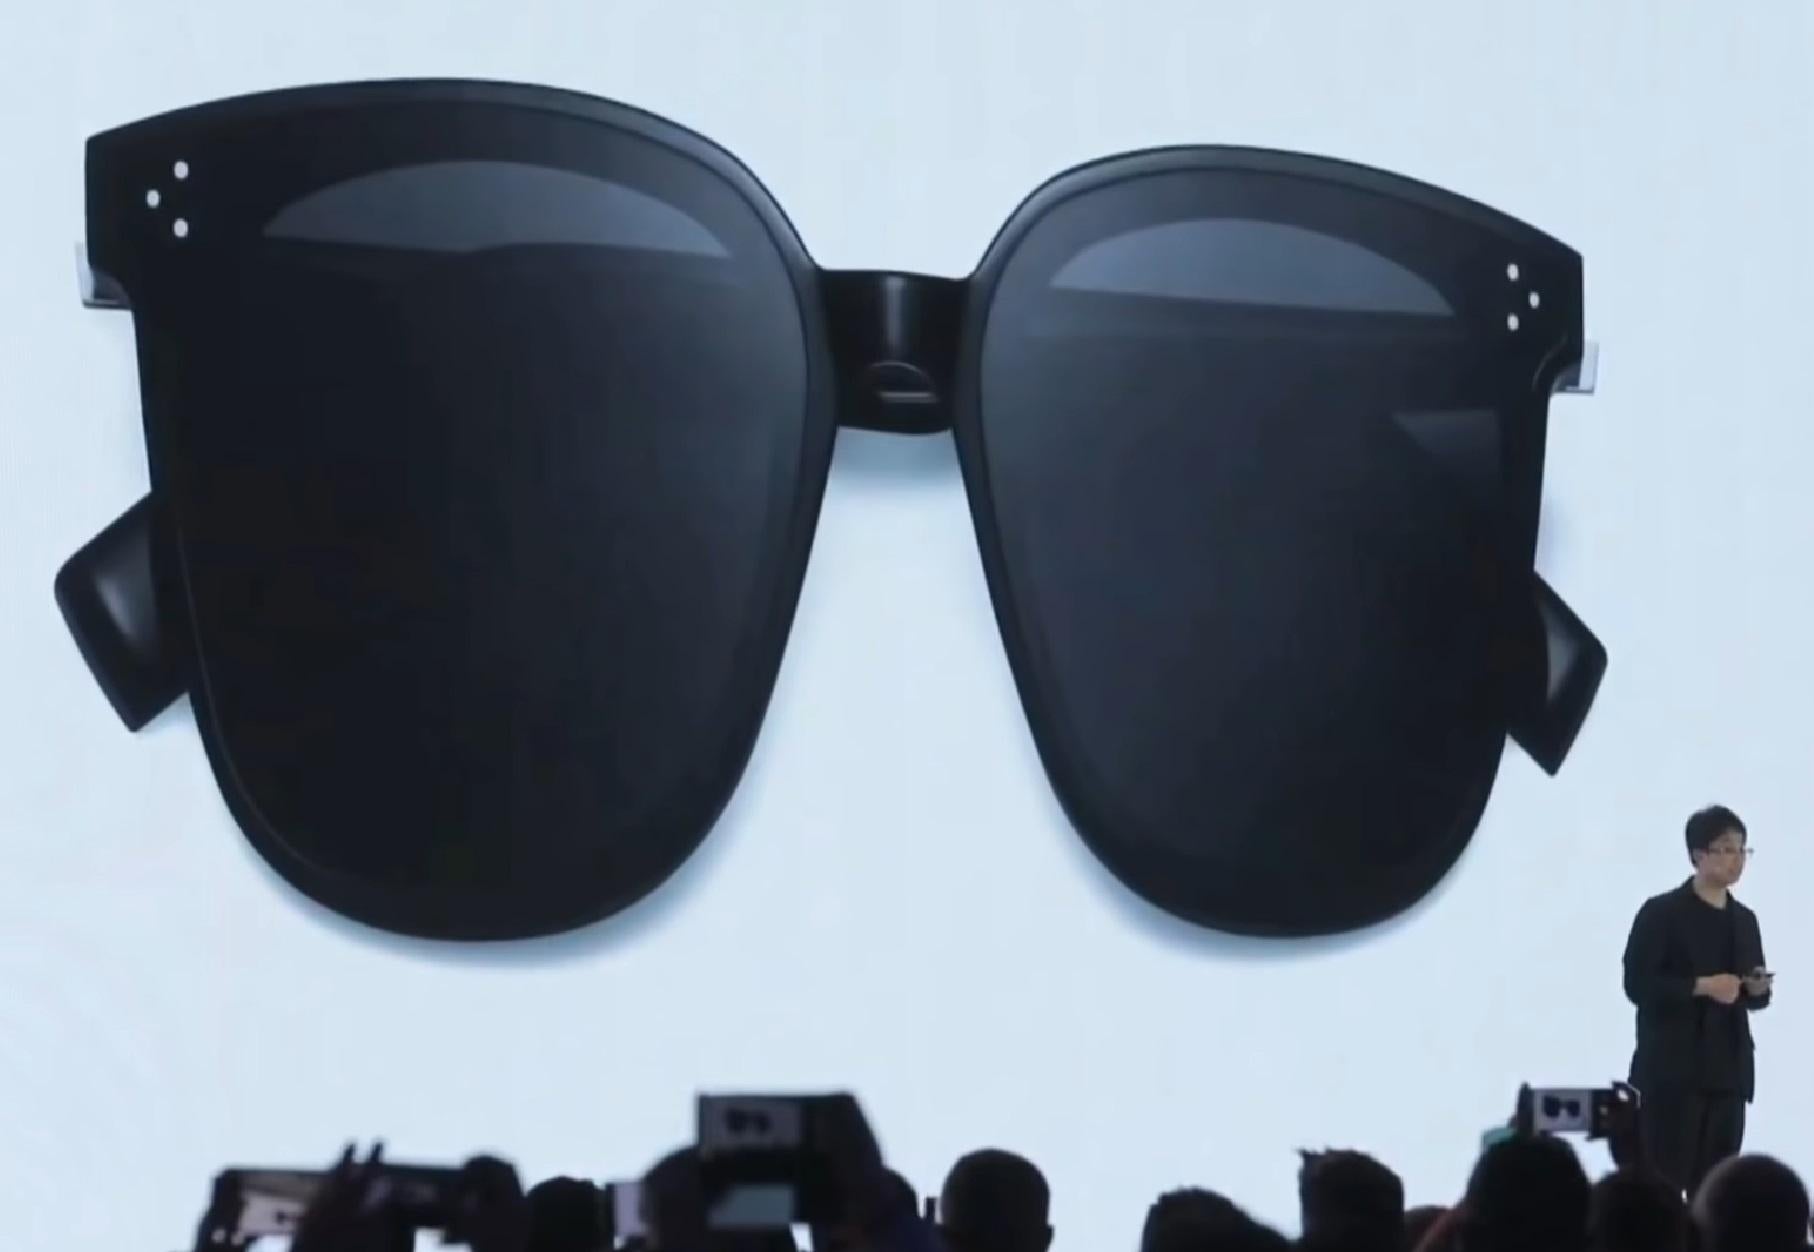 Huawei unveils Eyewear smartglasses designed to be indistinguishable from regular glasses